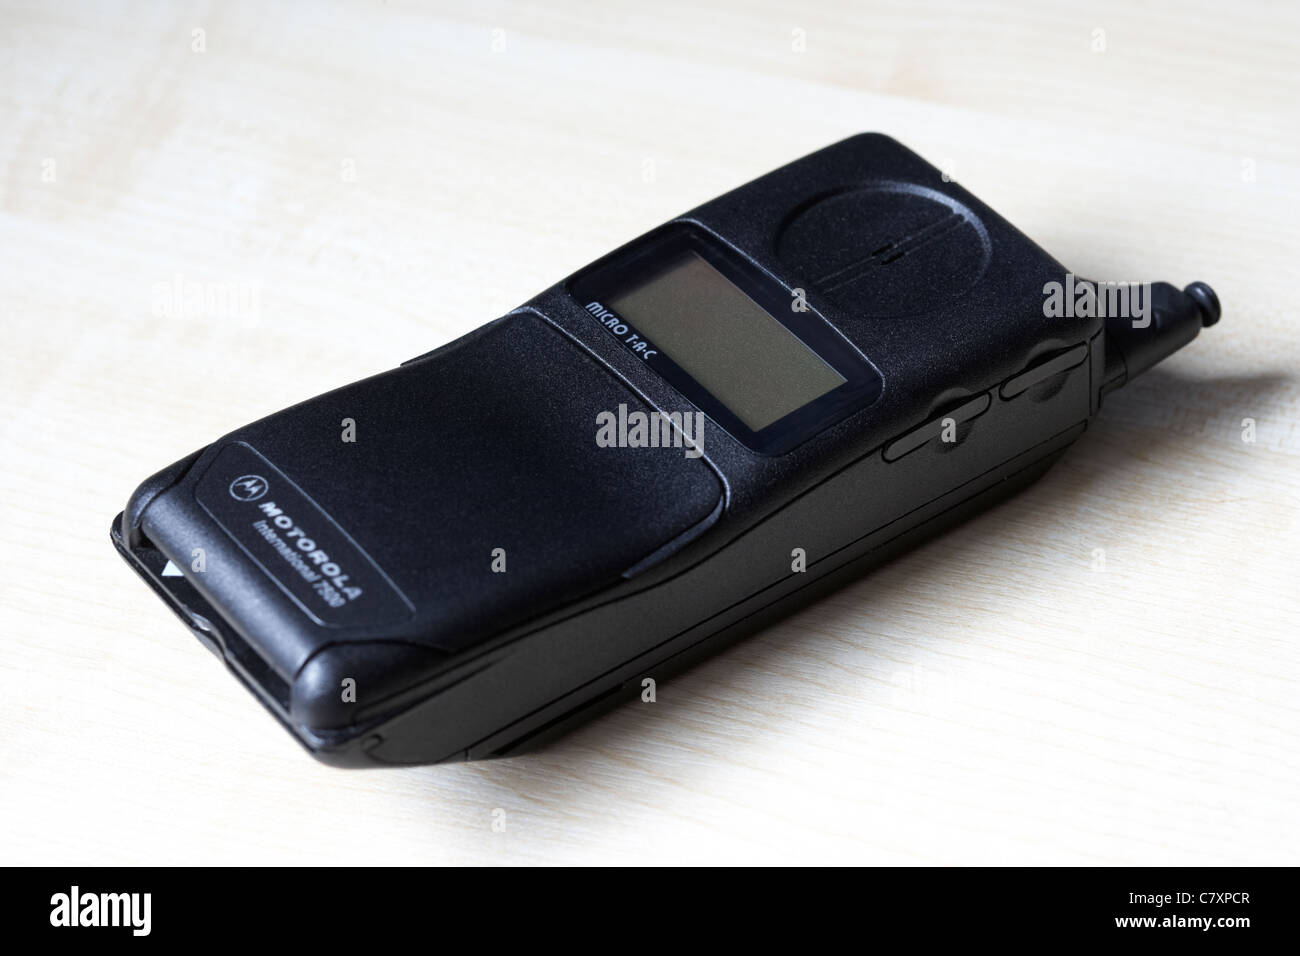 International 7500 de l'Atc micro motorola 900 gsm téléphone portable depuis le milieu des années 90 Banque D'Images